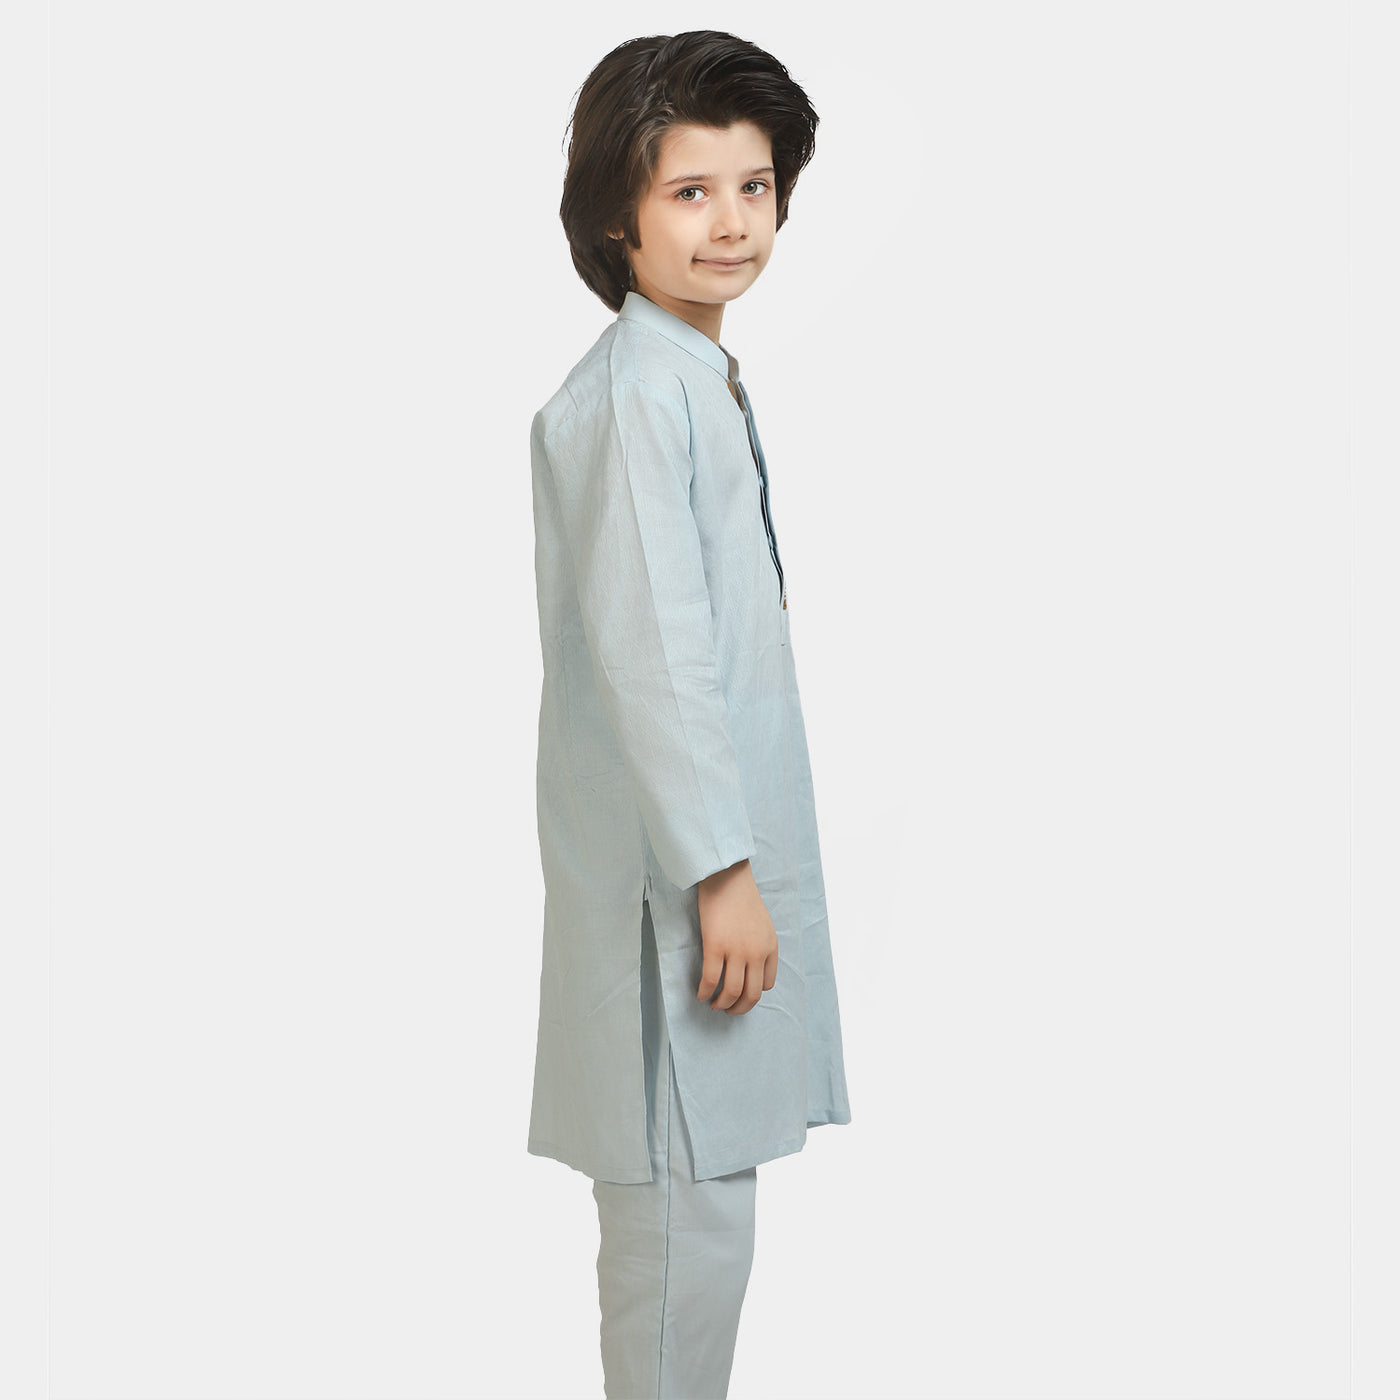 Boys Jacquard Styling Kurta Pajama - Light Blue